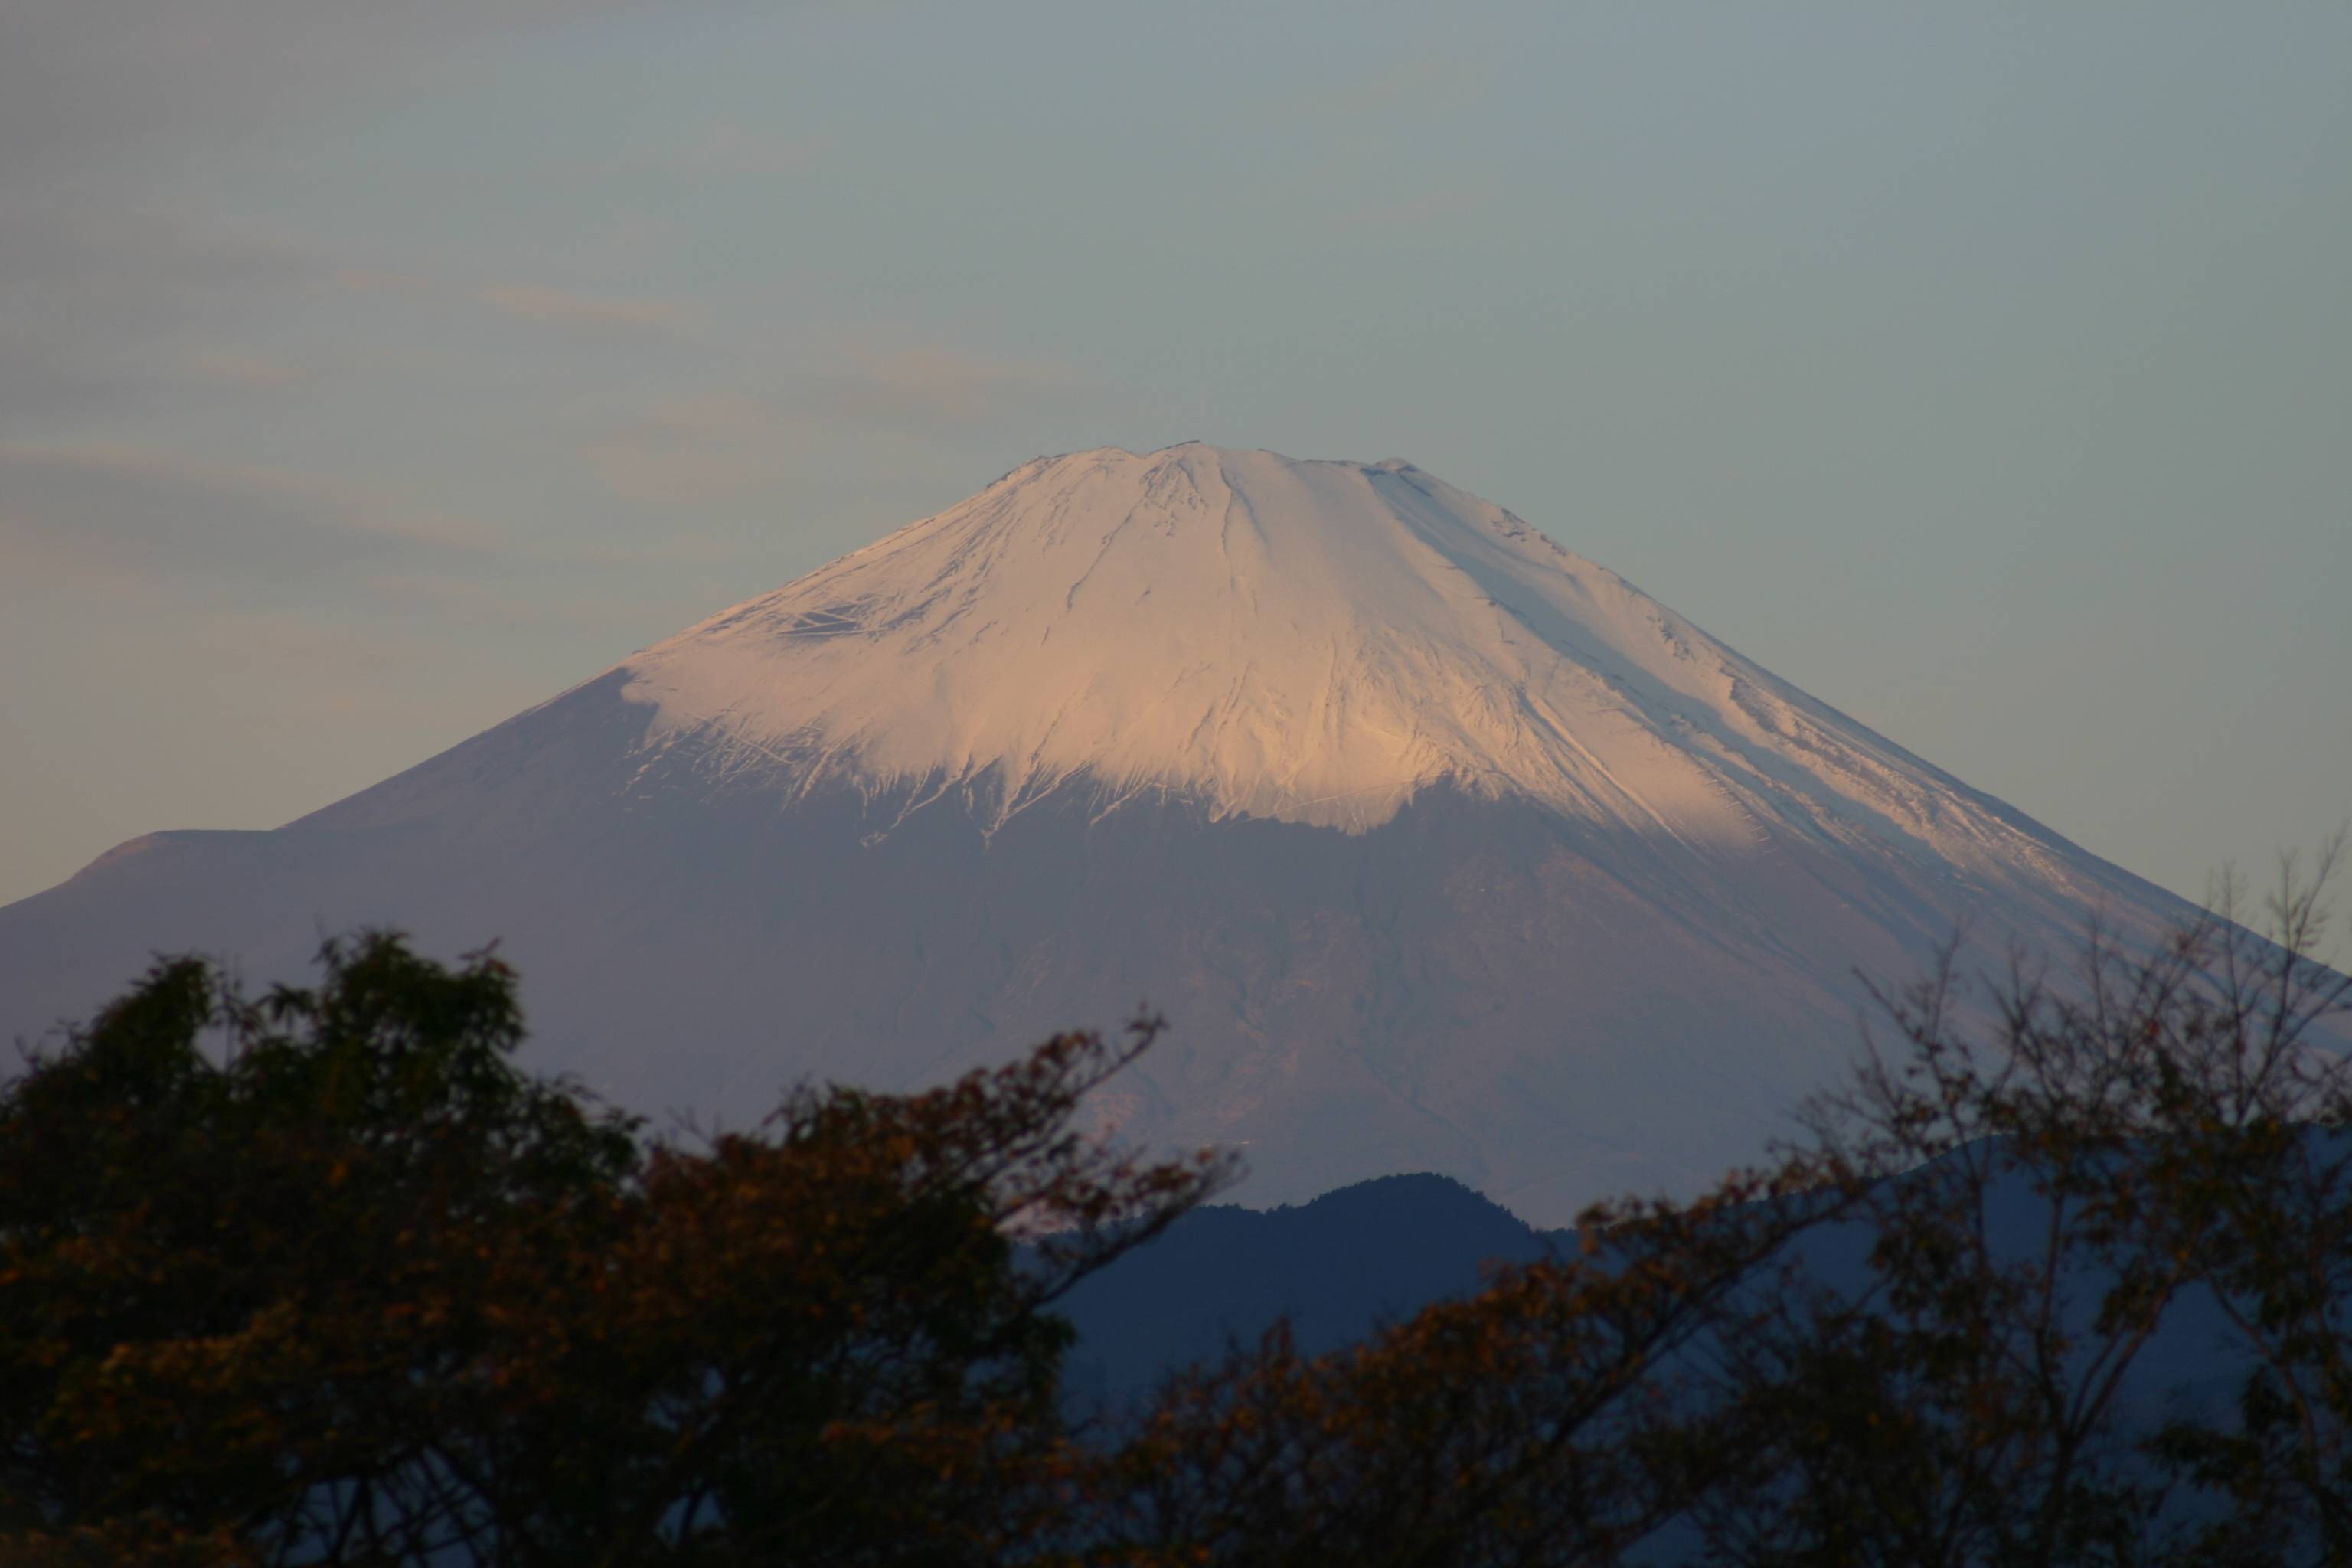 Mt. Fuji, Dec 2, 2004